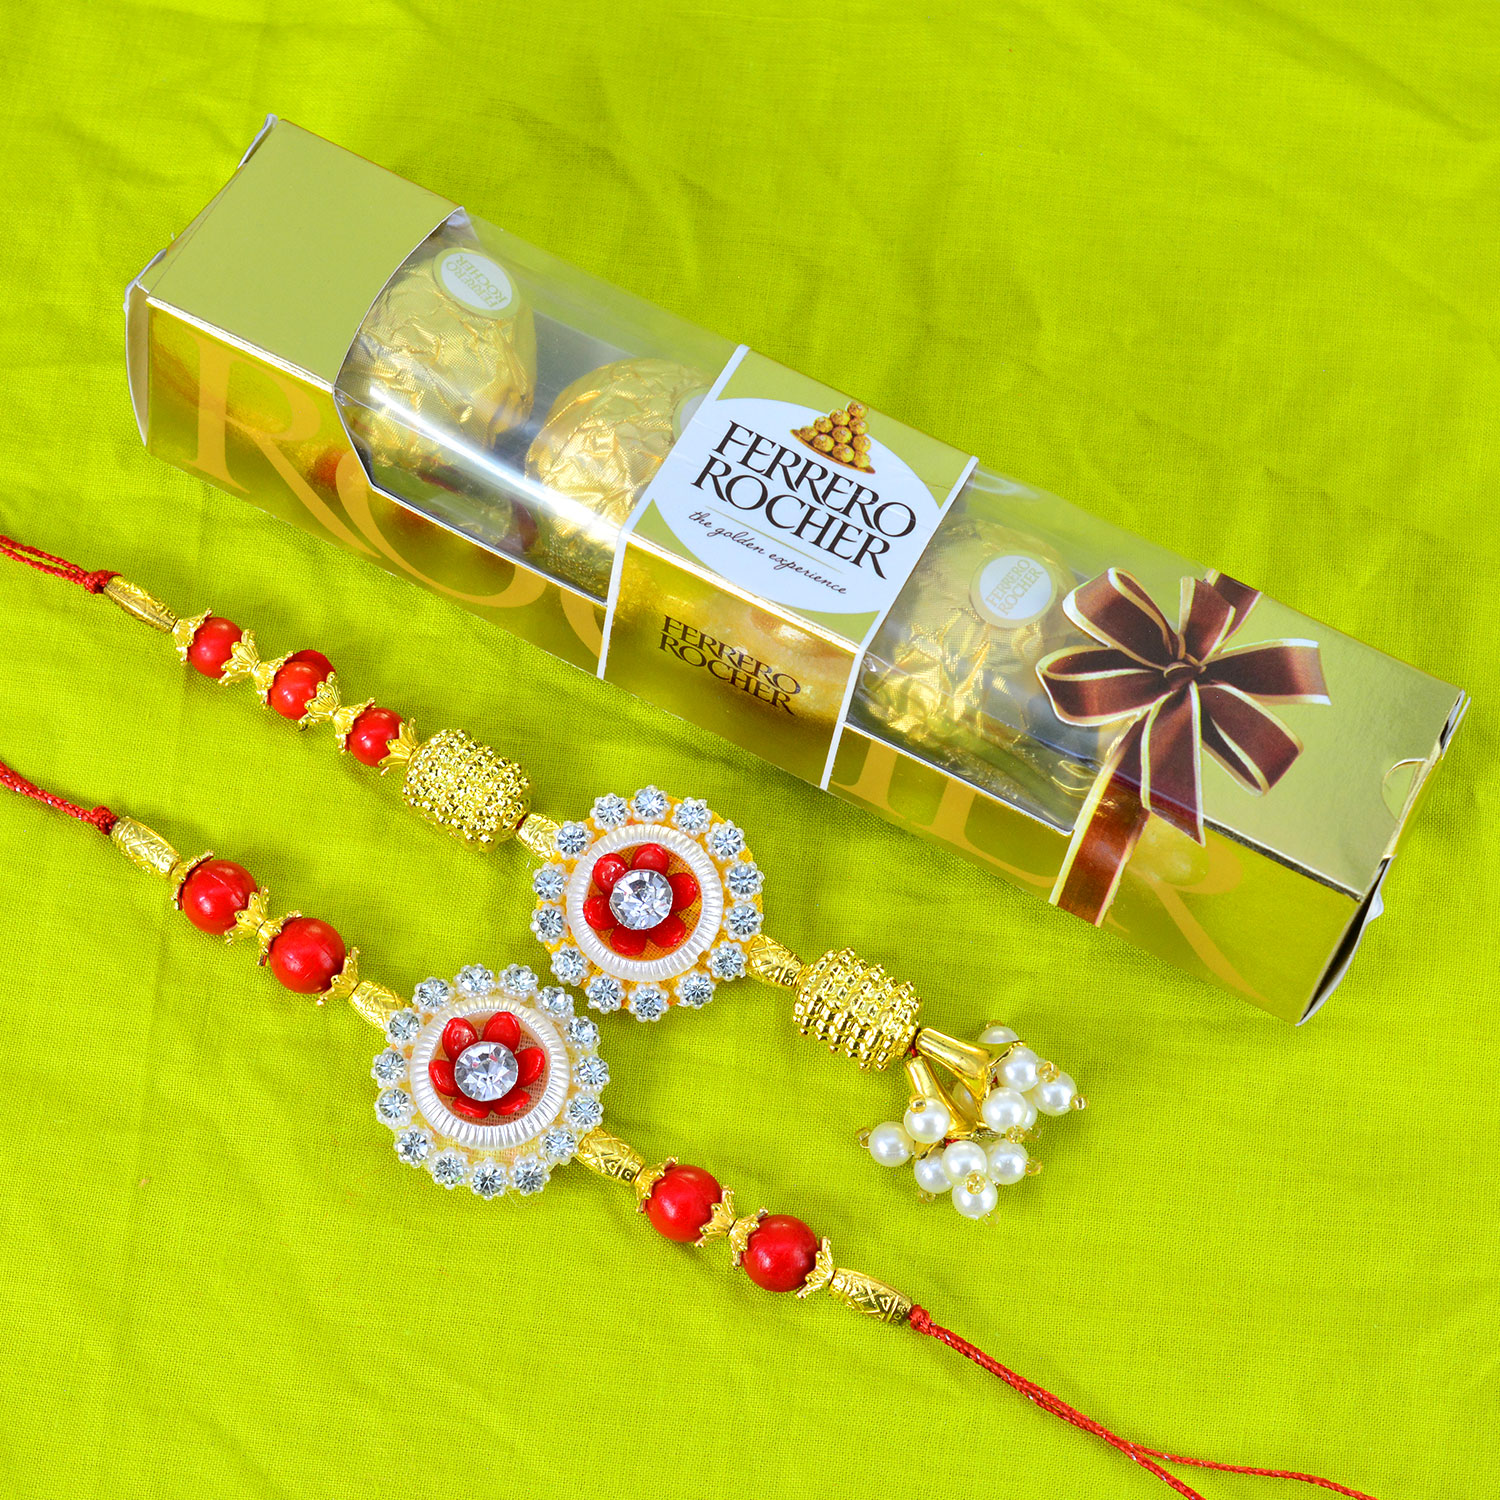 Floral Shape Bhaiya Bhabhi Rakhi with Tasty Ferrer Rocher Chocolate